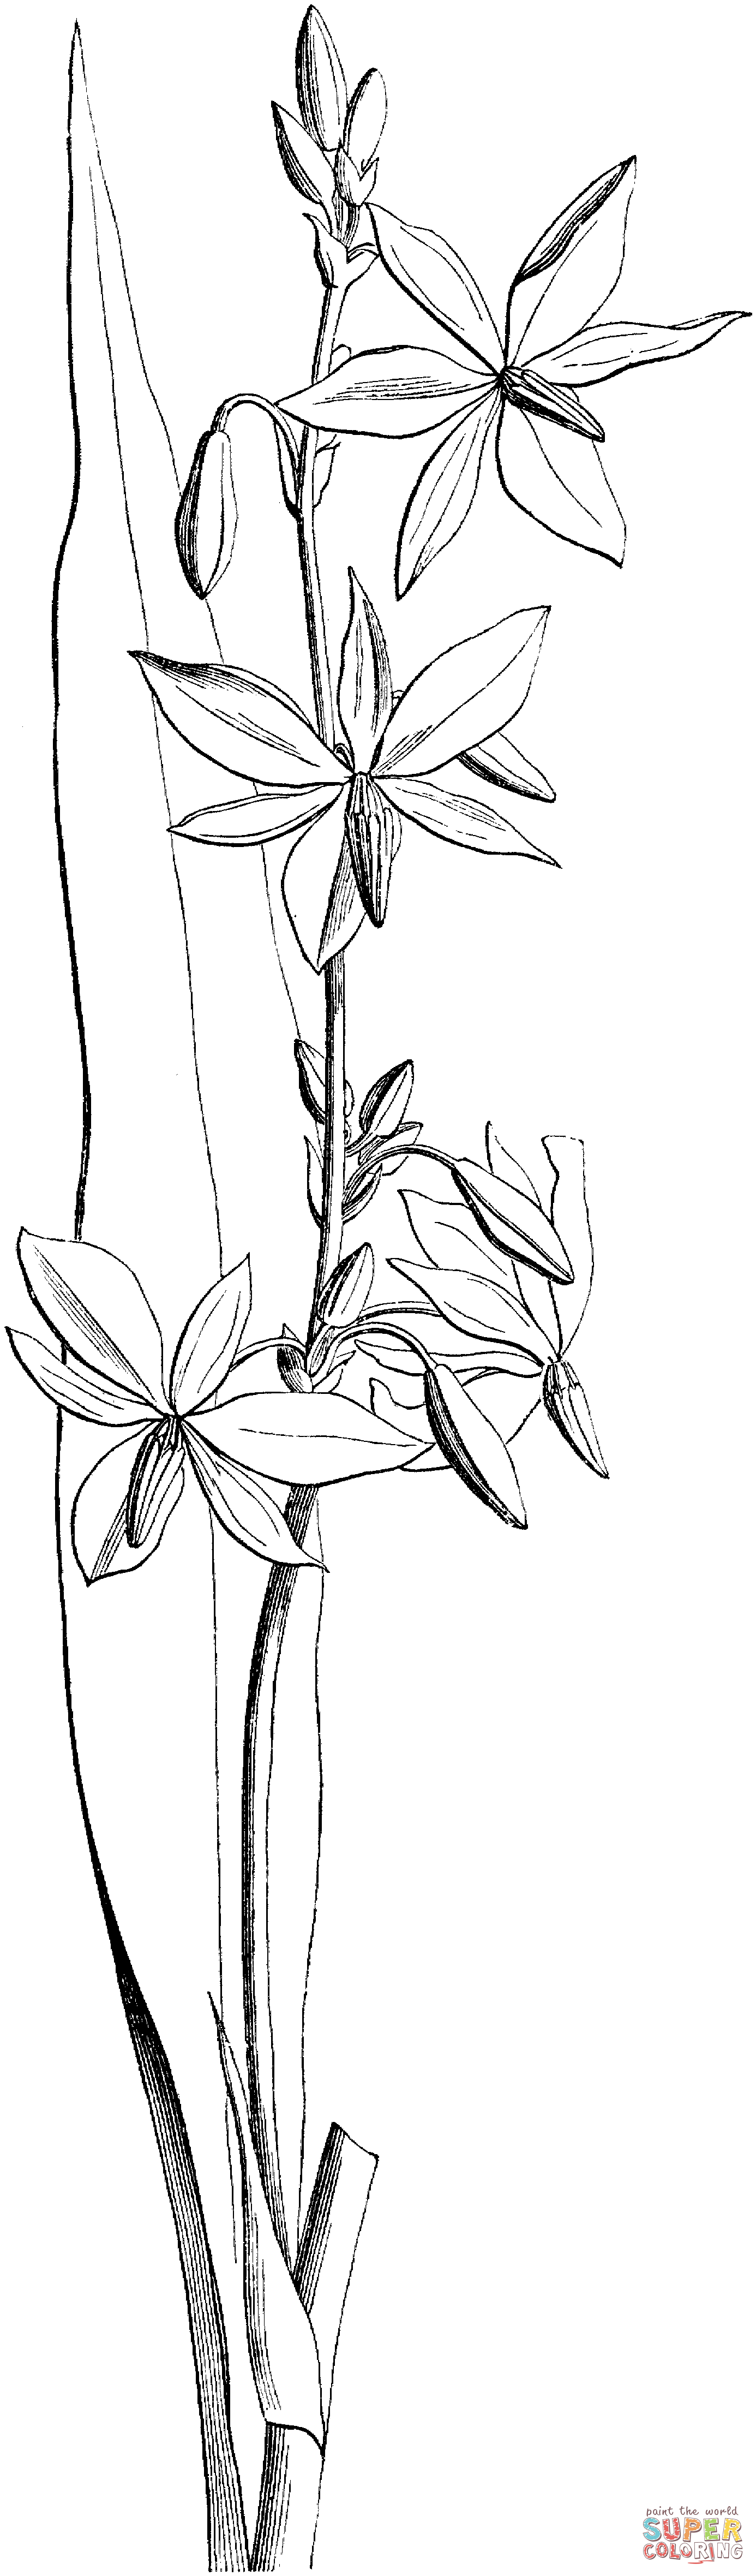 Orchidée victorienne australienne d'Orchid